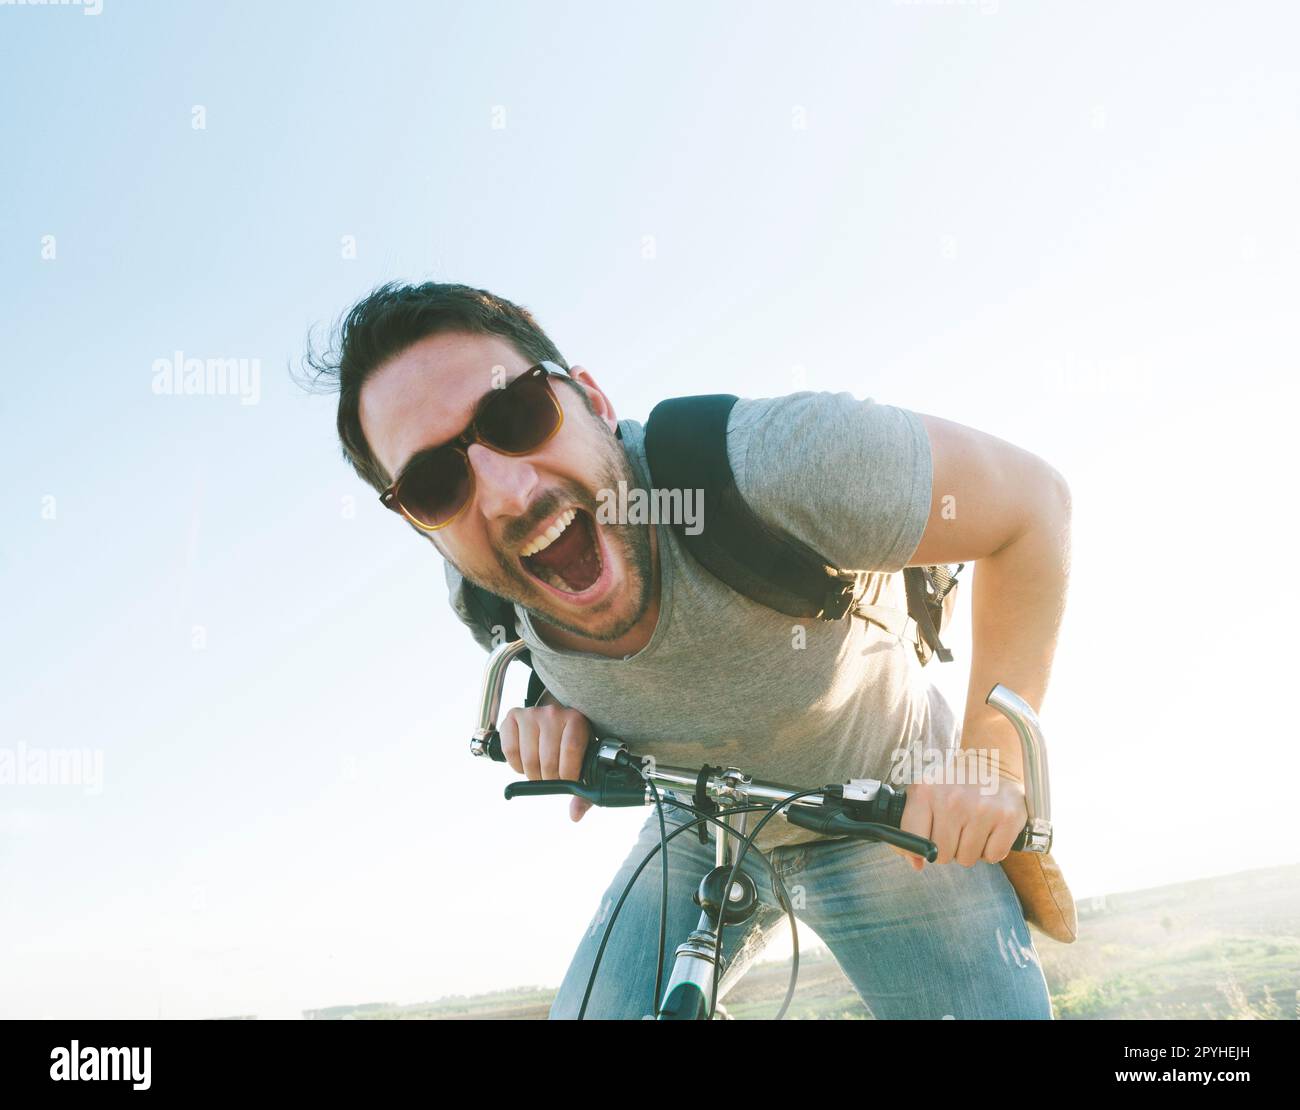 Aktiver Sportler mit aufgeregtem Gesichtsausdruck beim Erkunden und Reisen mit dem Mountainbike auf der Straße. Bild im Vintage-Film-Filterstil. Stockfoto